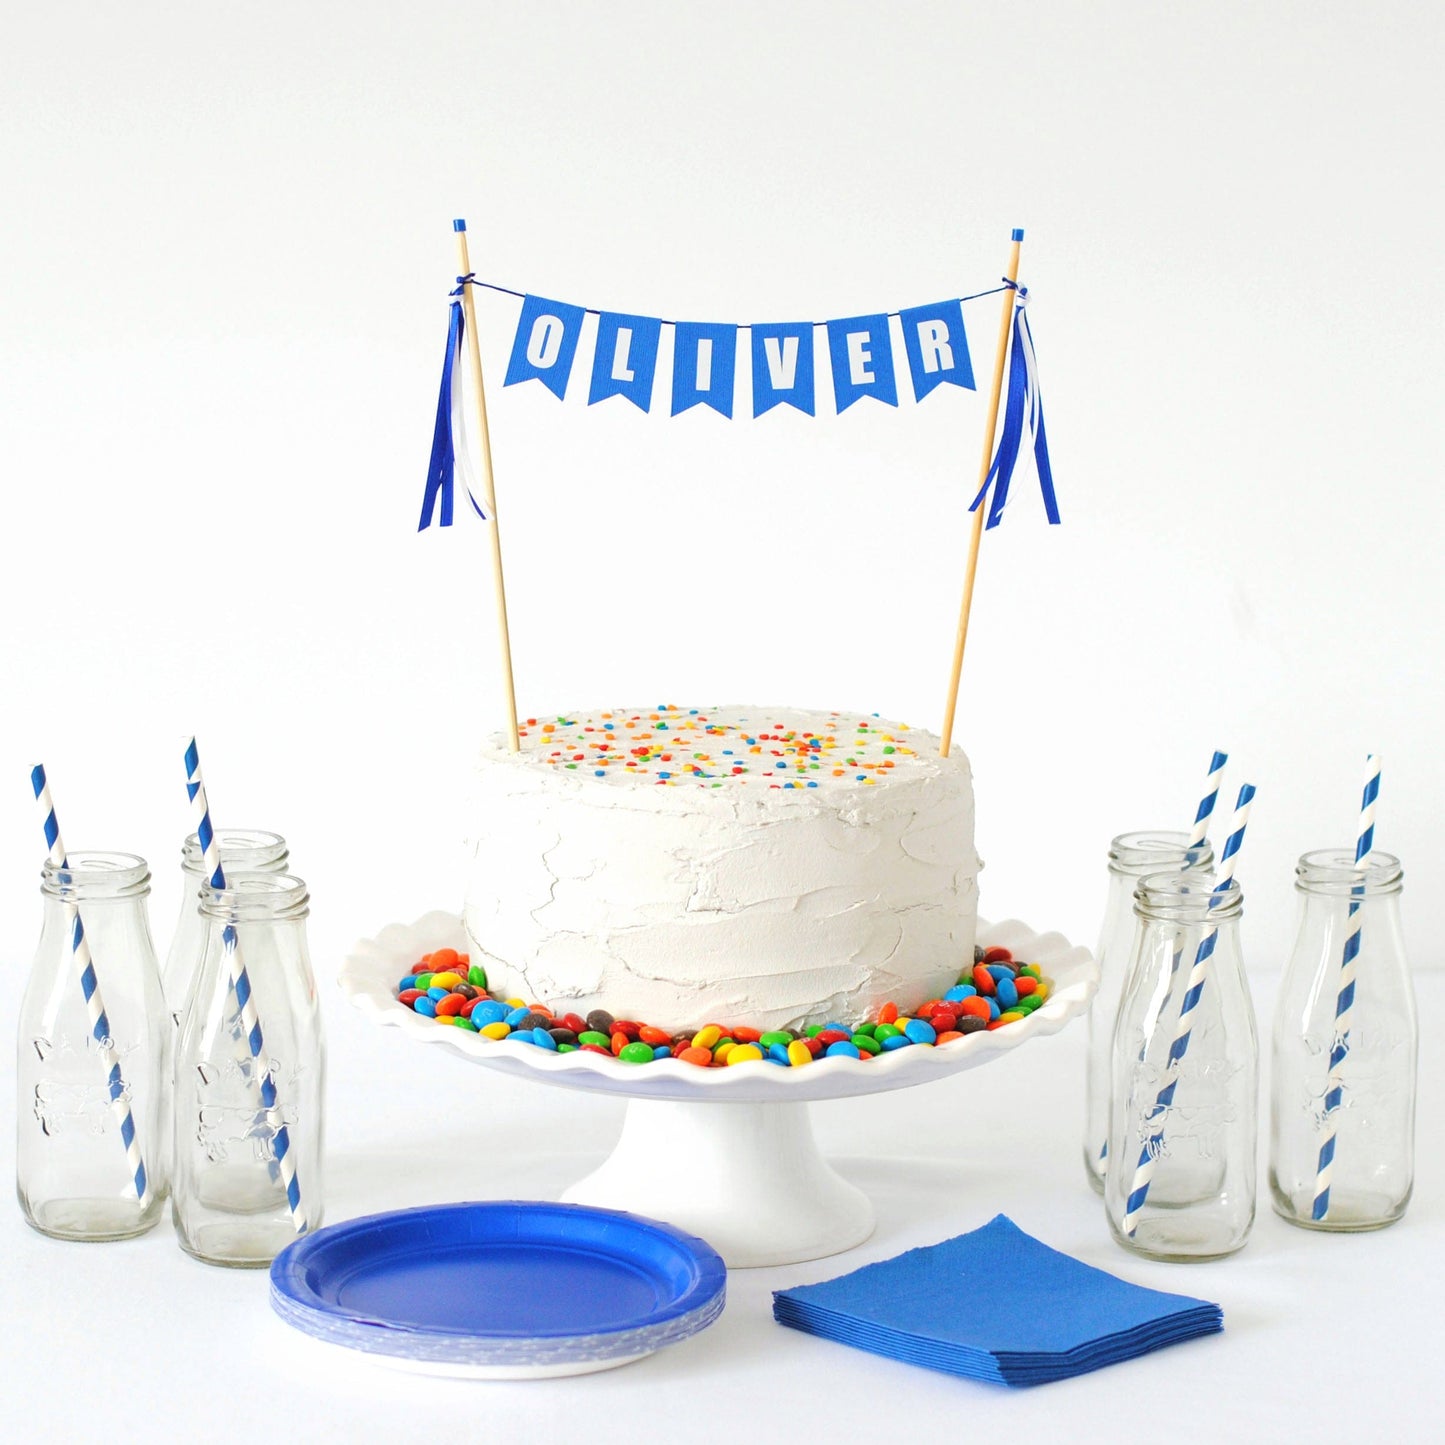 
                  
                    royal blue name cake topper for kids birthday cake 
                  
                